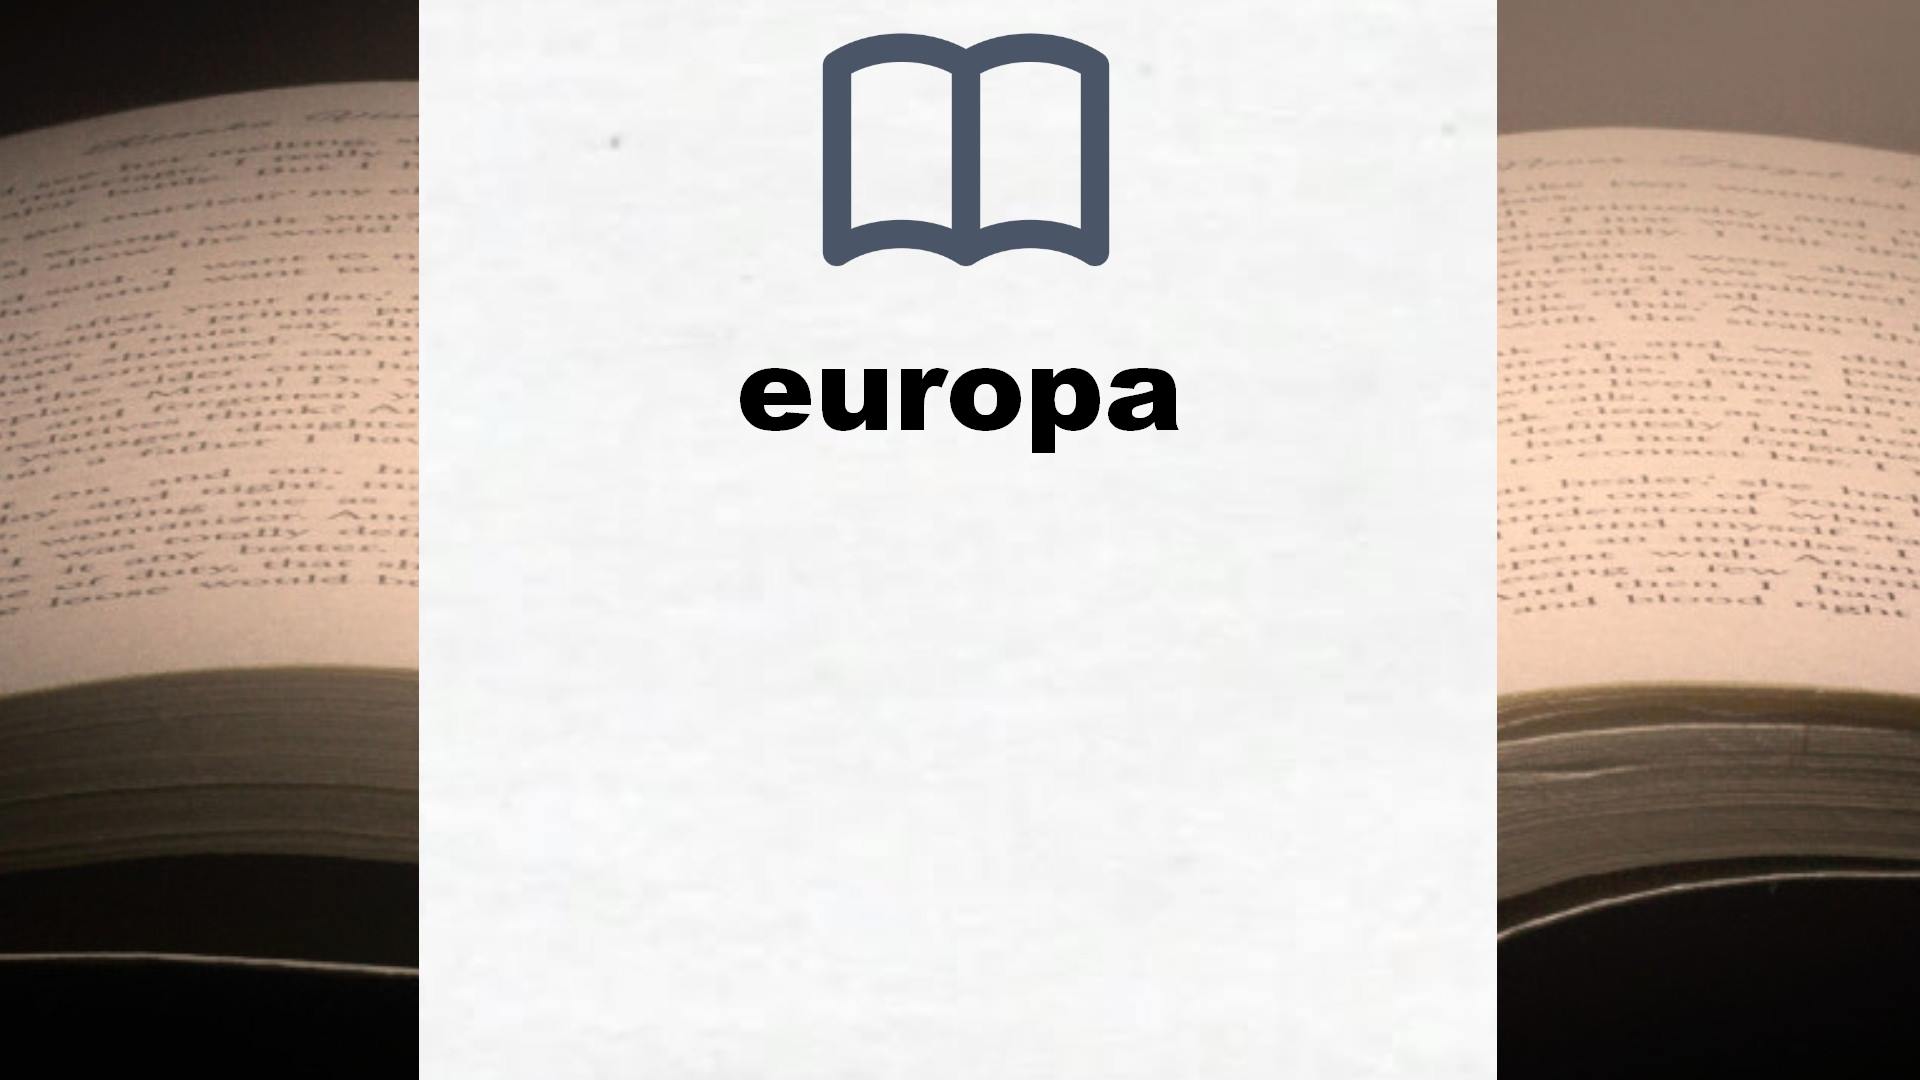 Libros sobre europa